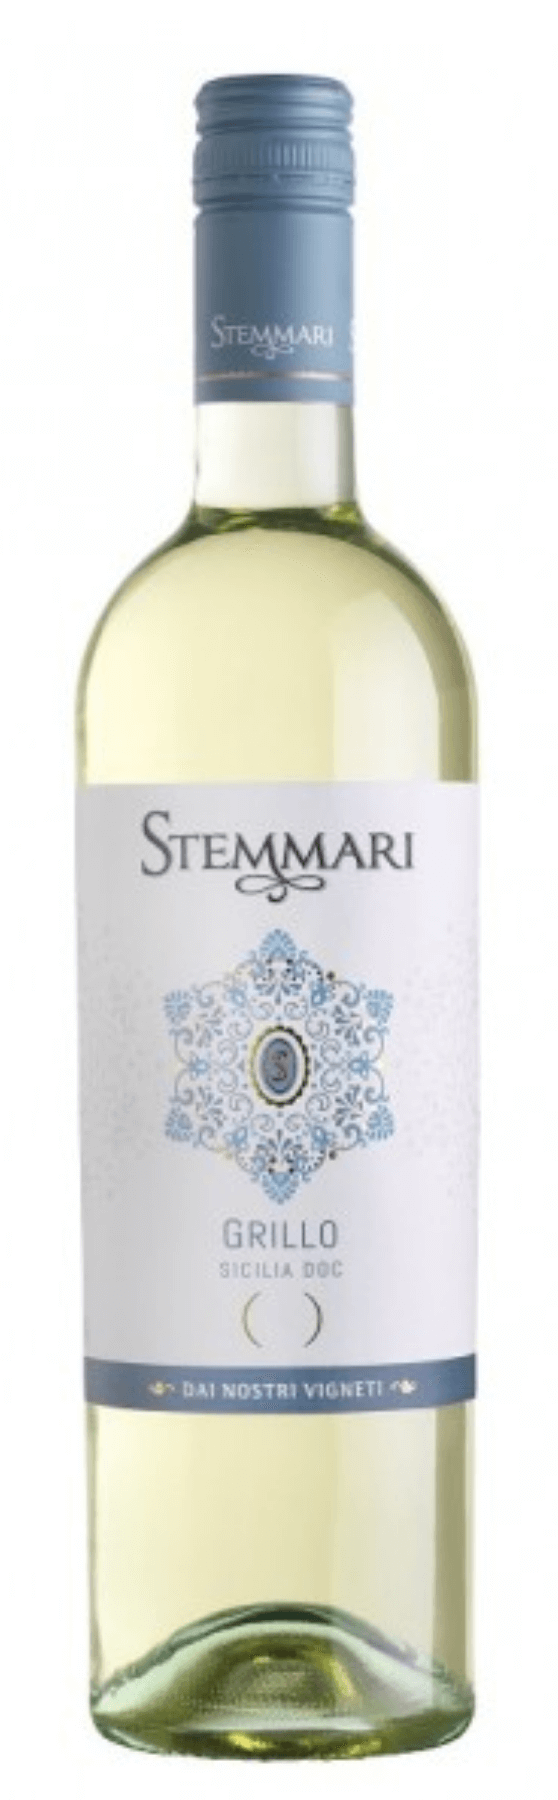 Stemmari Grillo Sicilia DOC 2021 | Weißwein Vinoscout | trocken | 